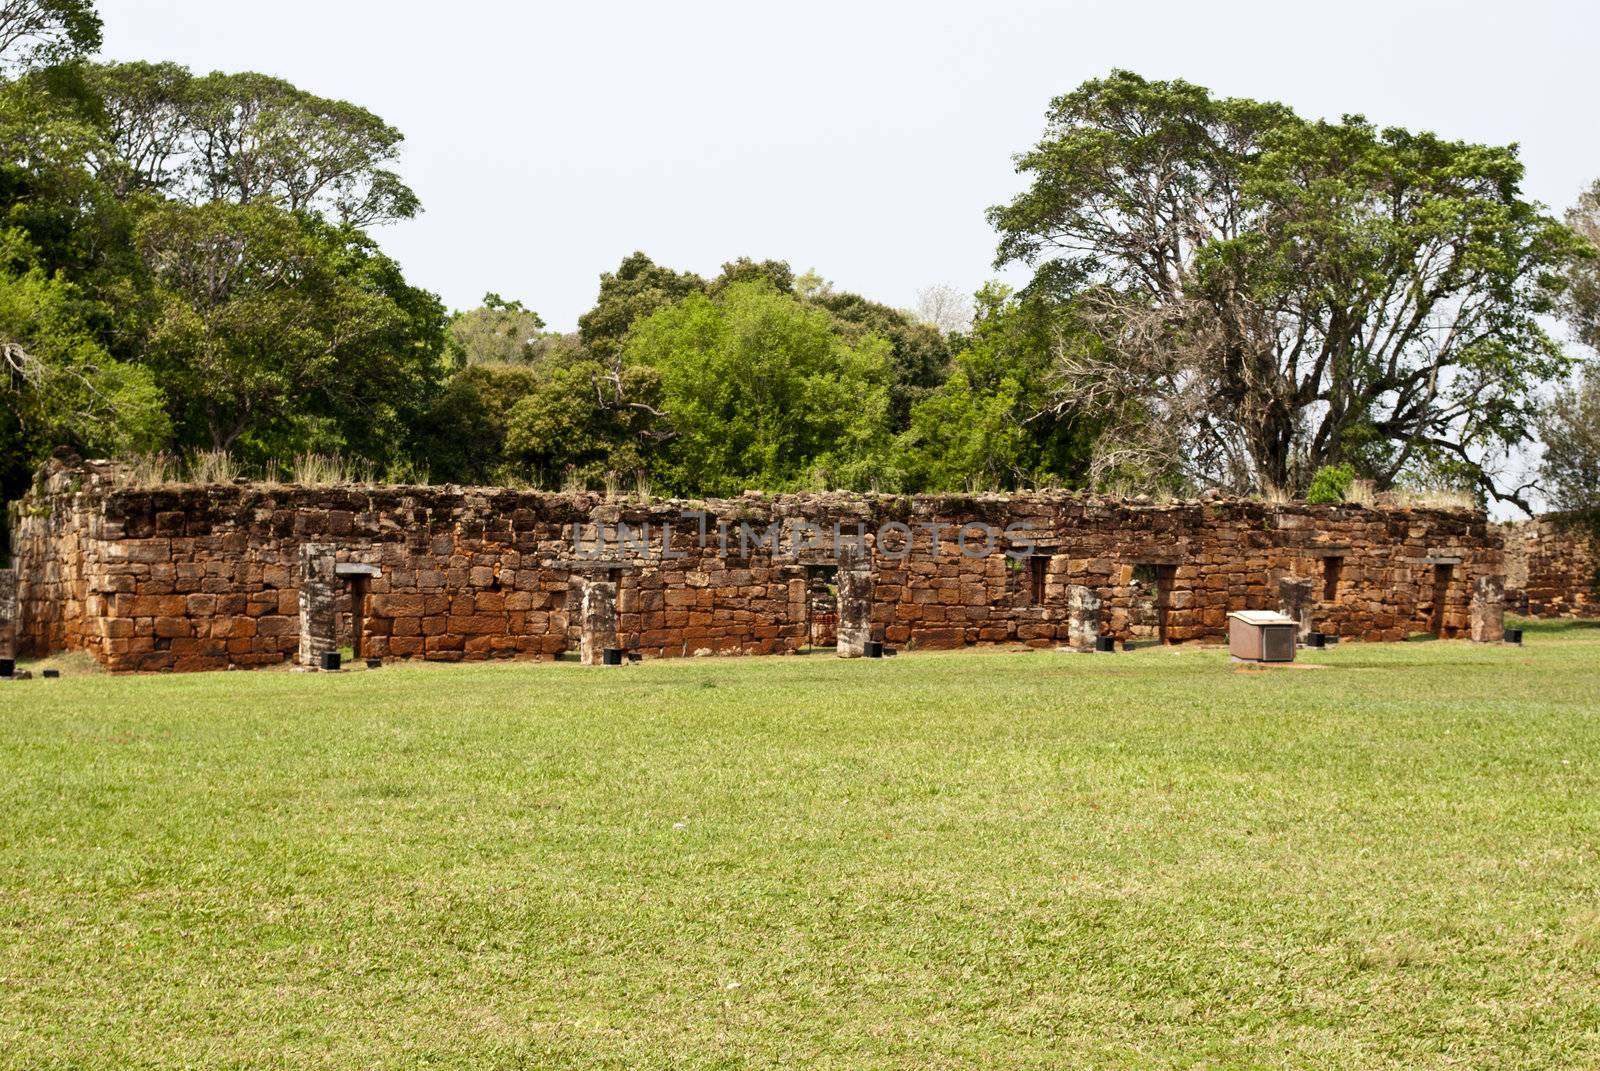 Ruins of San Ignacio, Argentina by lauria